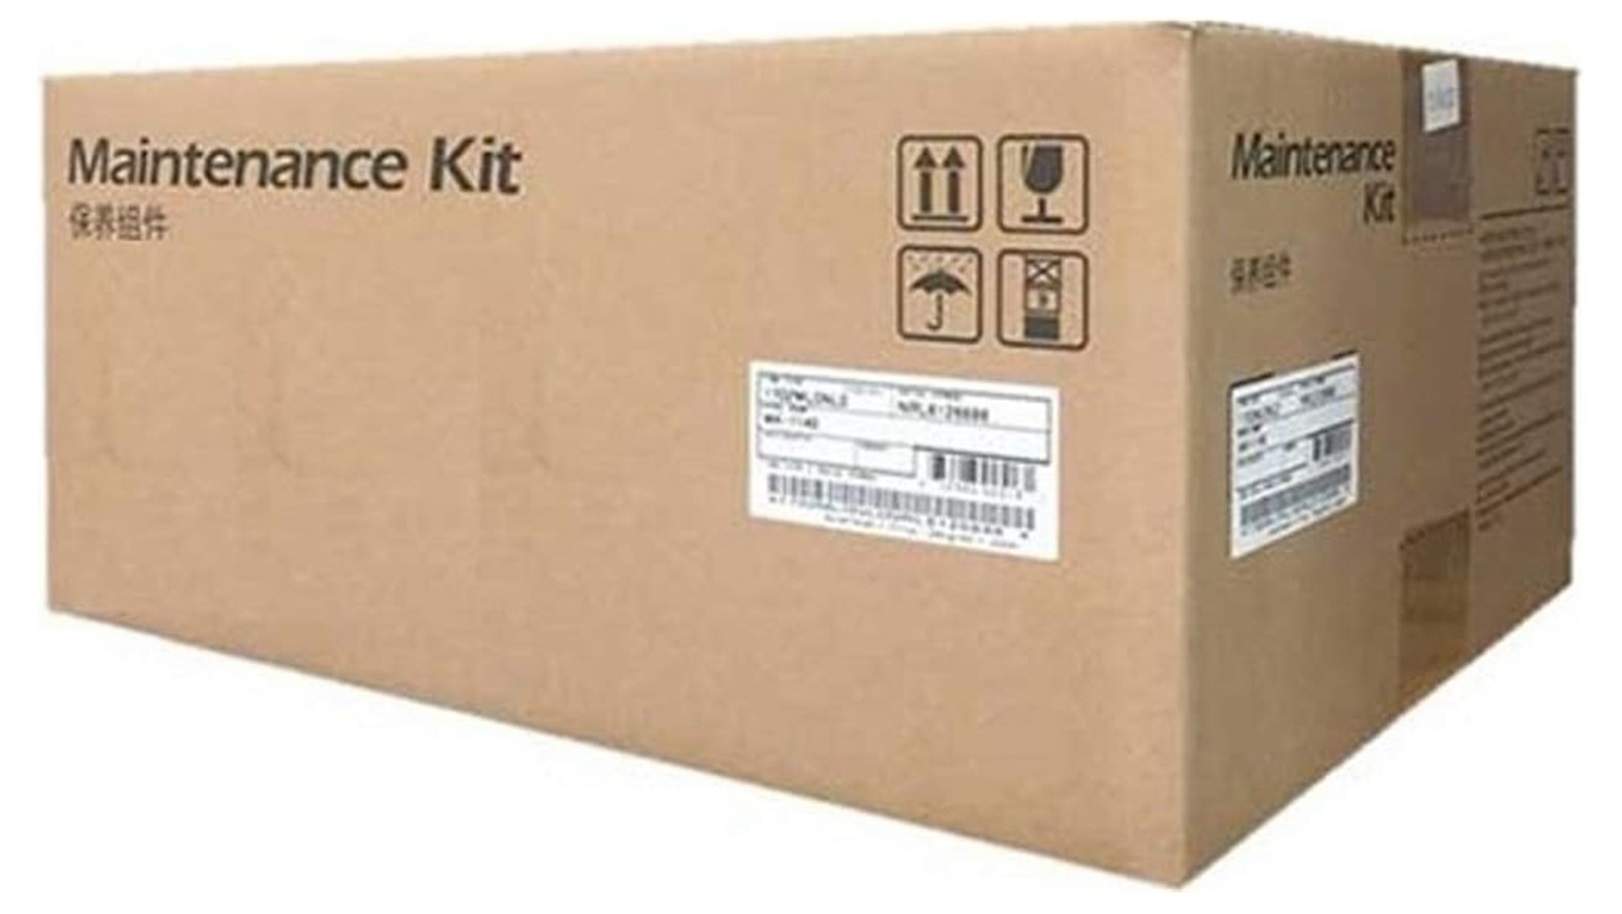 Kit de Mantenimiento Kyocera MK-3382 / 500k | 2404 - Kit de Mantenimiento Kyocera MK-3382. Rendimiento 500.000 Páginas. MA5500ifx MA6000ifx PA5000x PA5500x PA6000x 170C0T7US0 